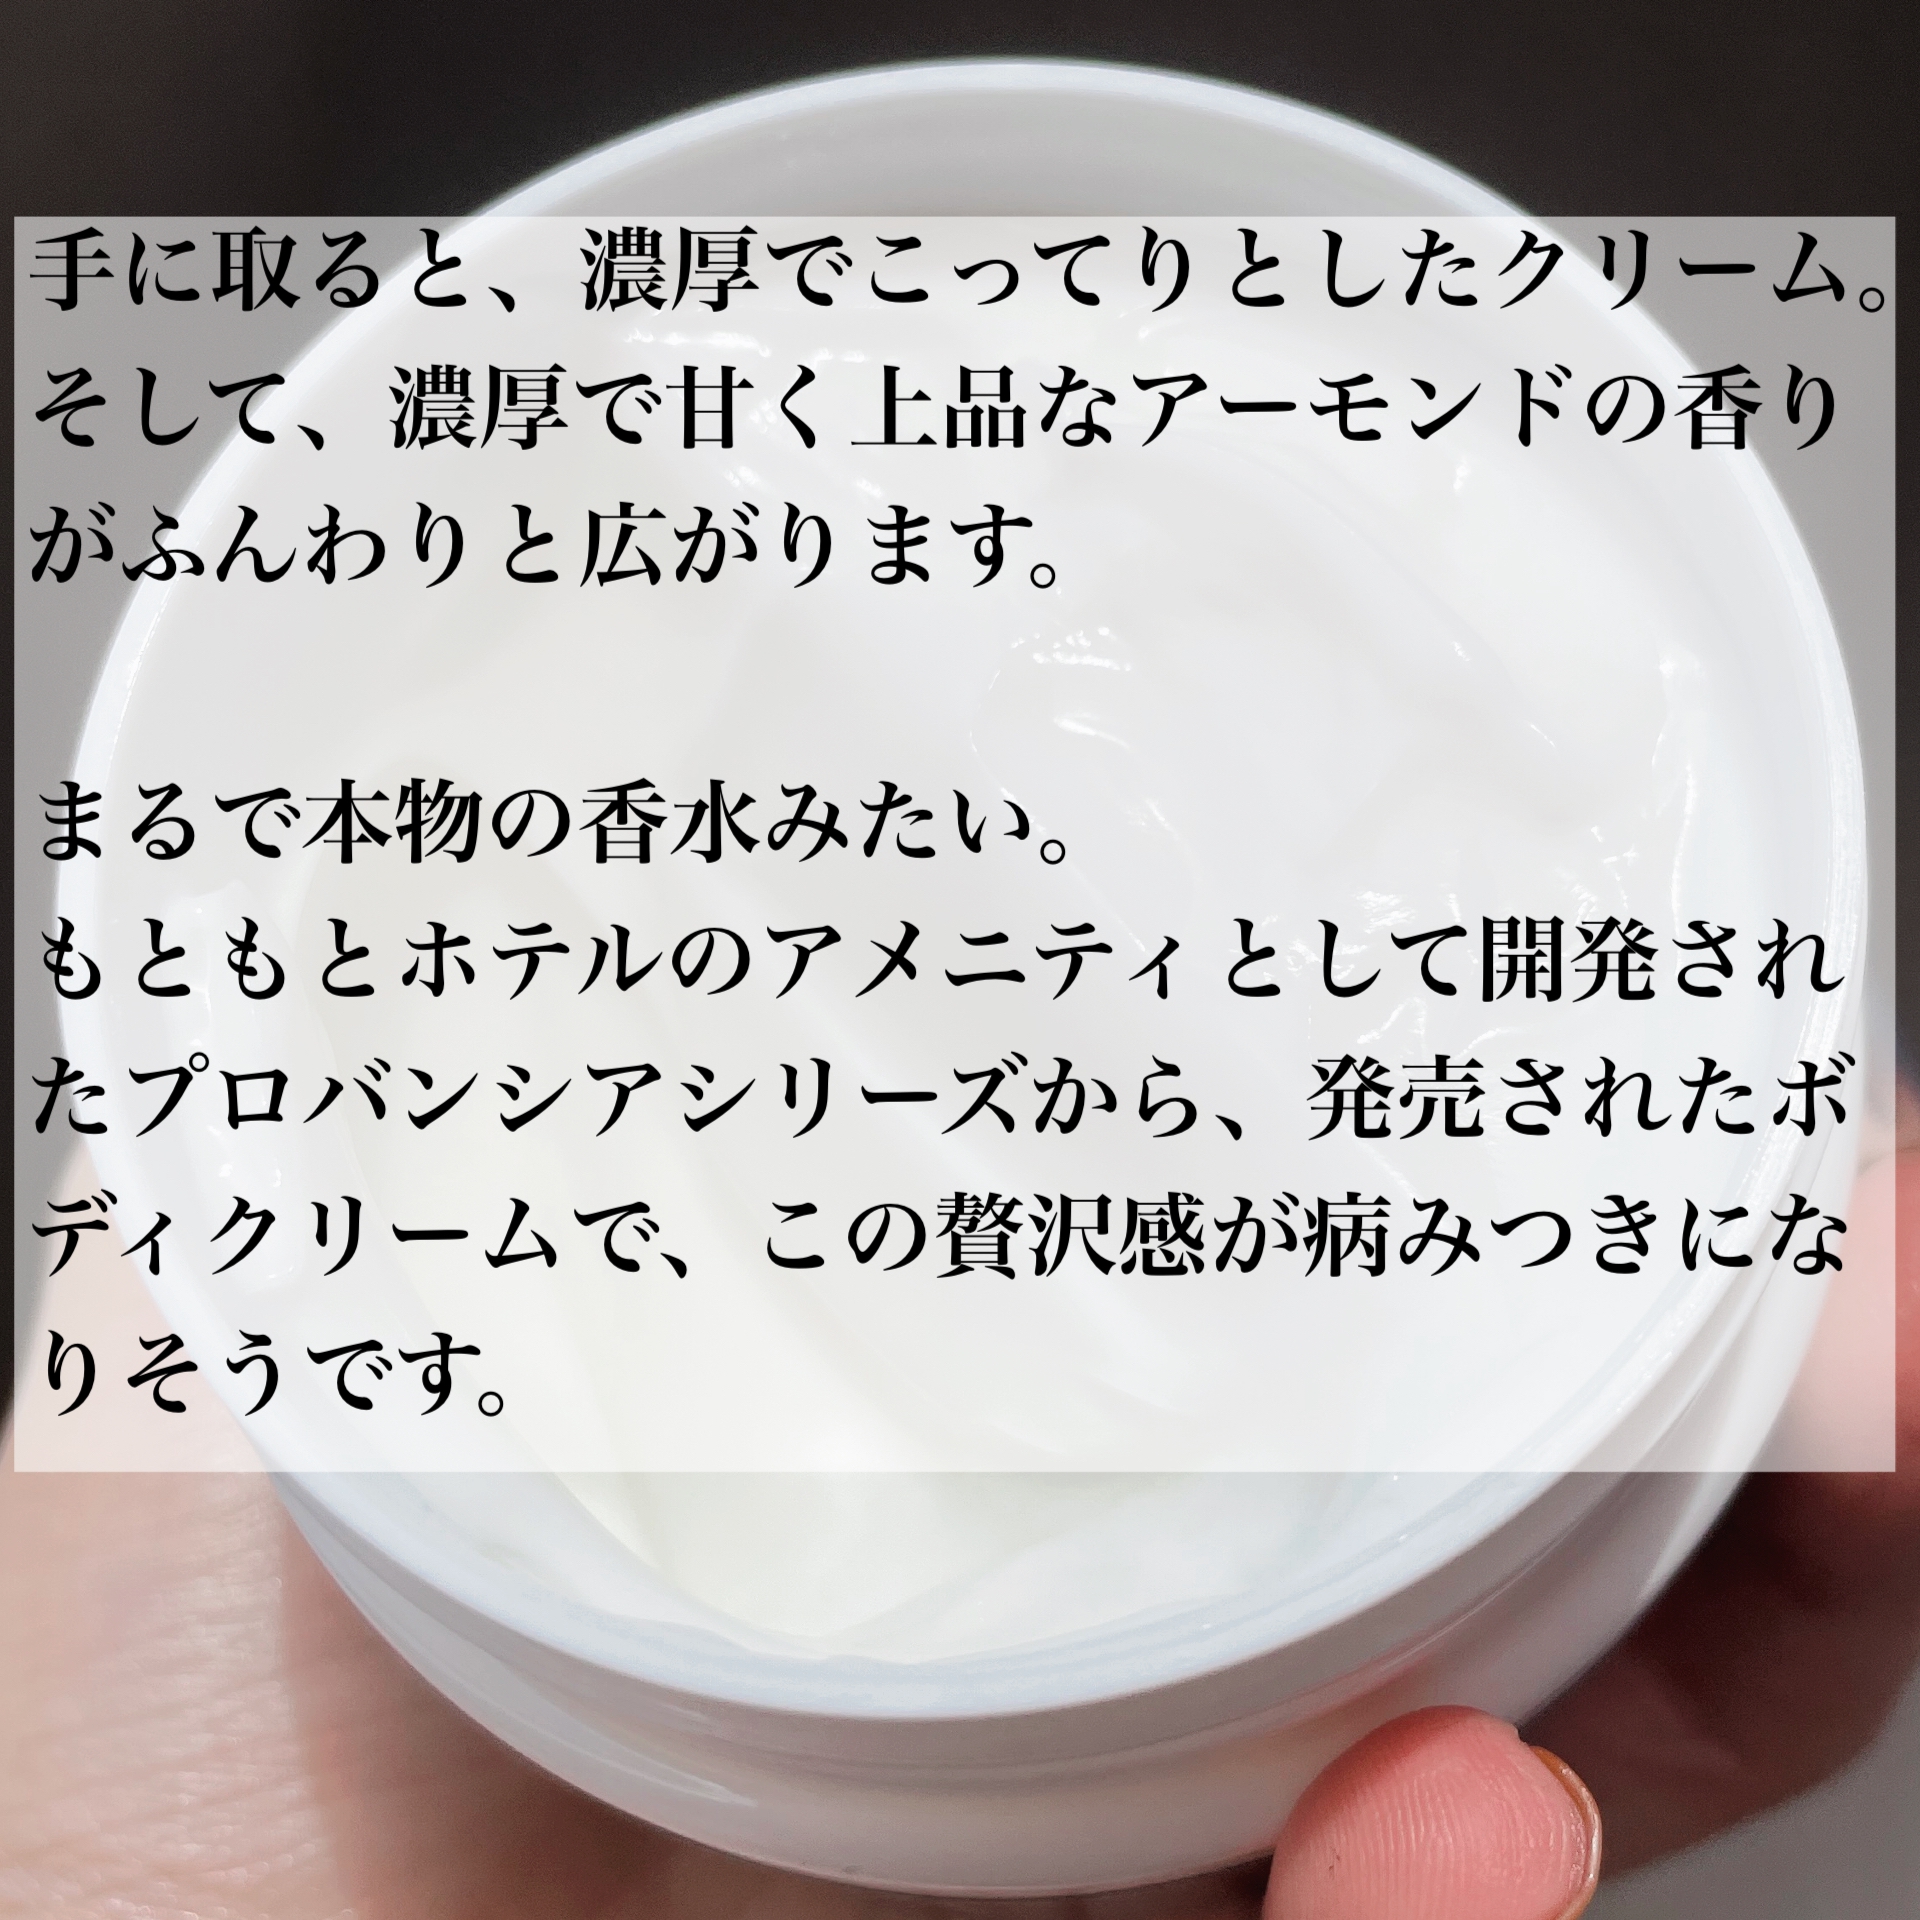 ペリカン石鹸(PELICAN SOAP) プロバンシア フレグランスボディクリームの良い点・メリットに関するなゆさんの口コミ画像3